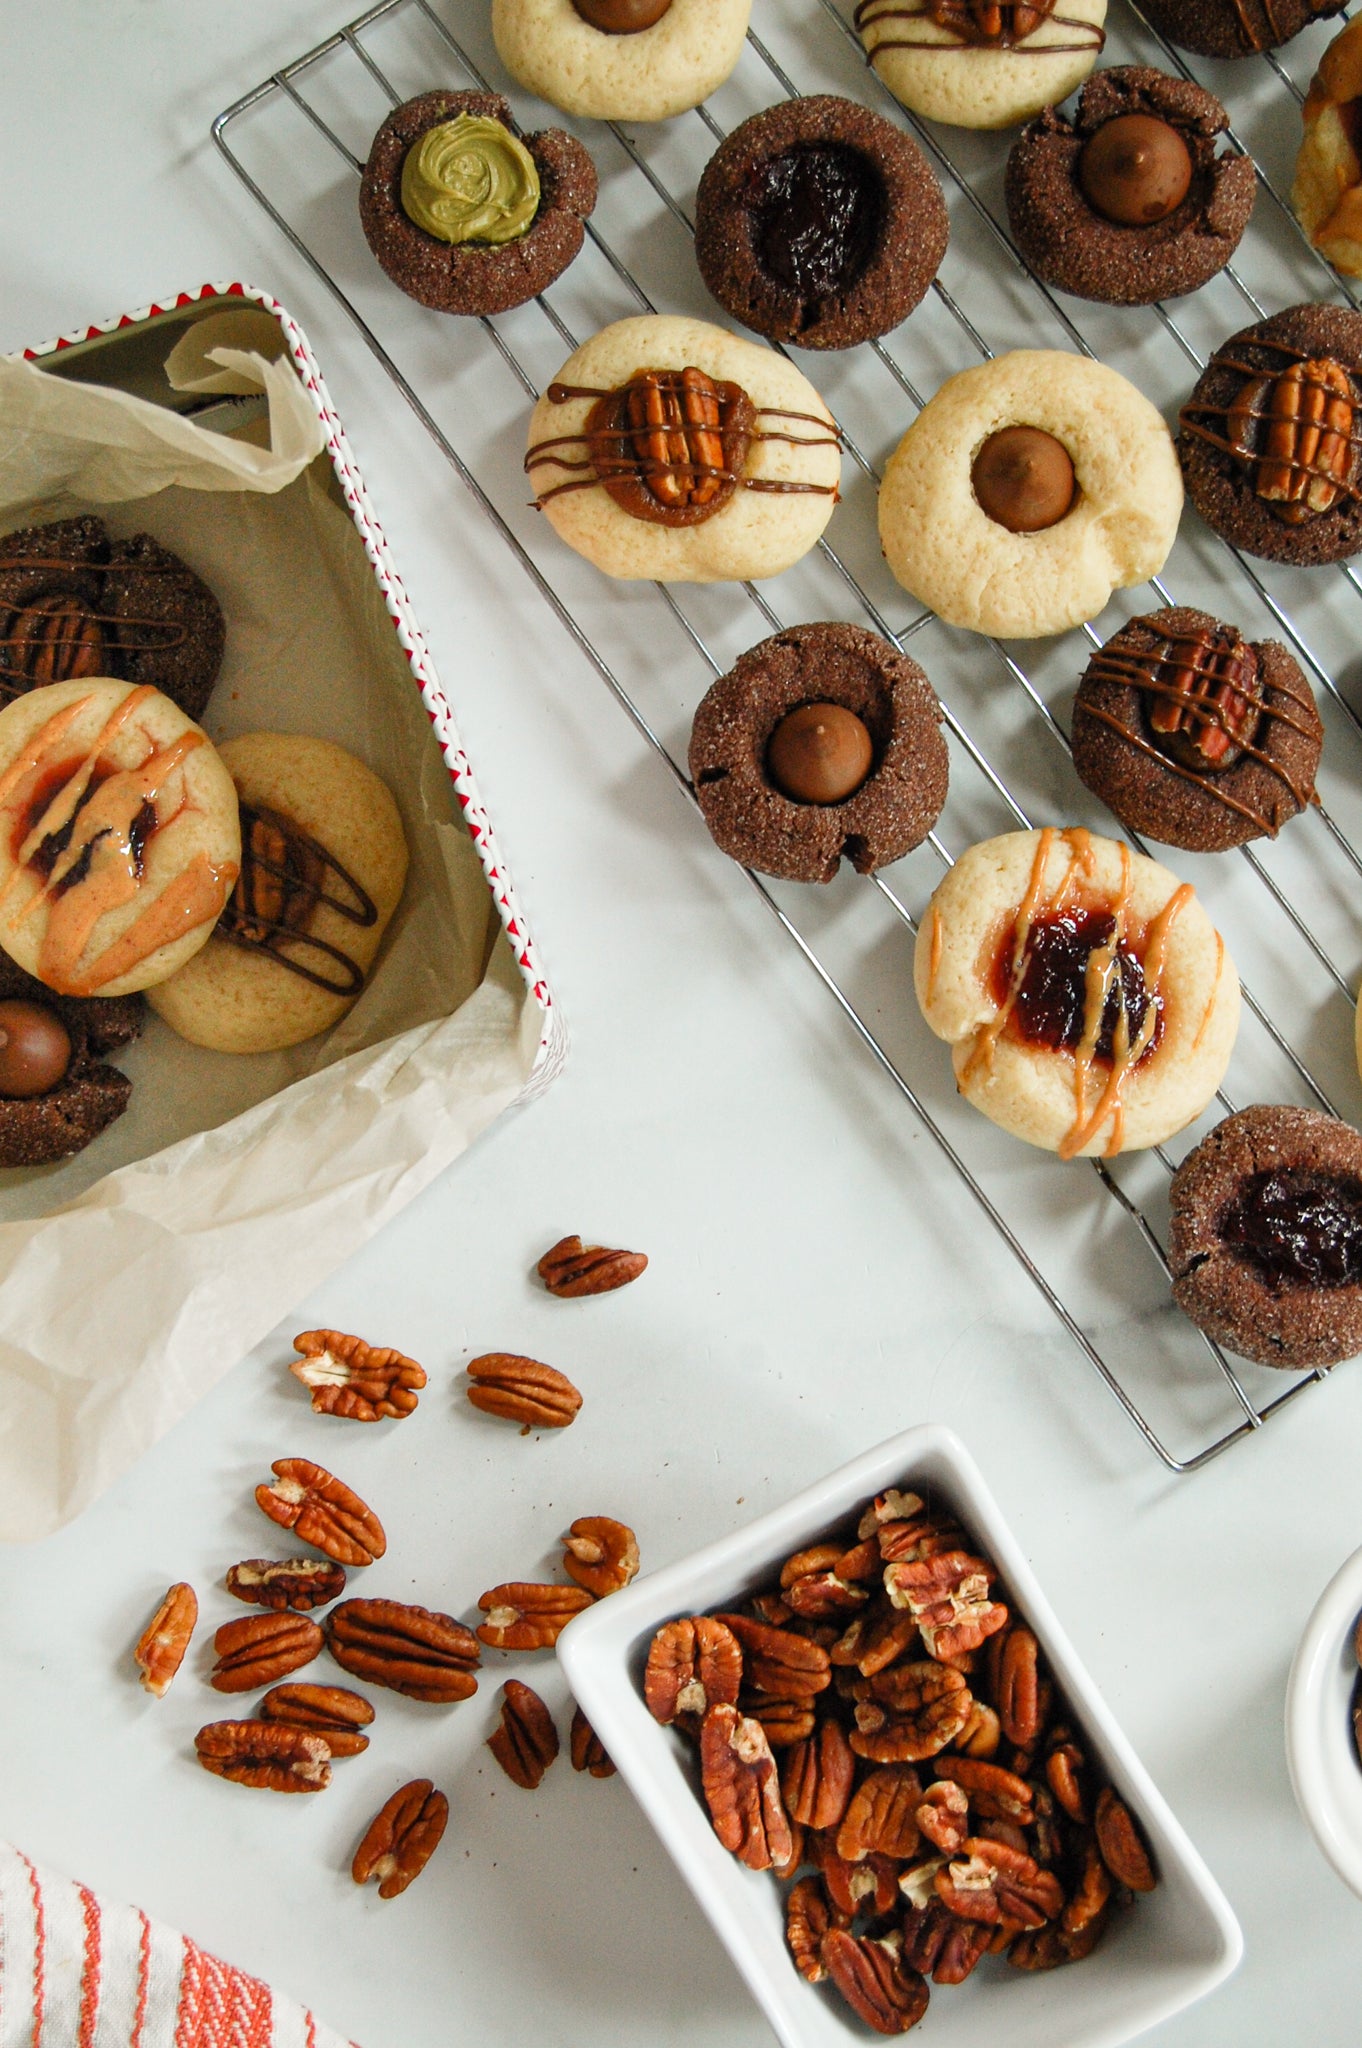 Deux simples recettes de biscuits à faire en famille durant le temps des fêtes. Utilisez votre imagination pour adapter les garnitures